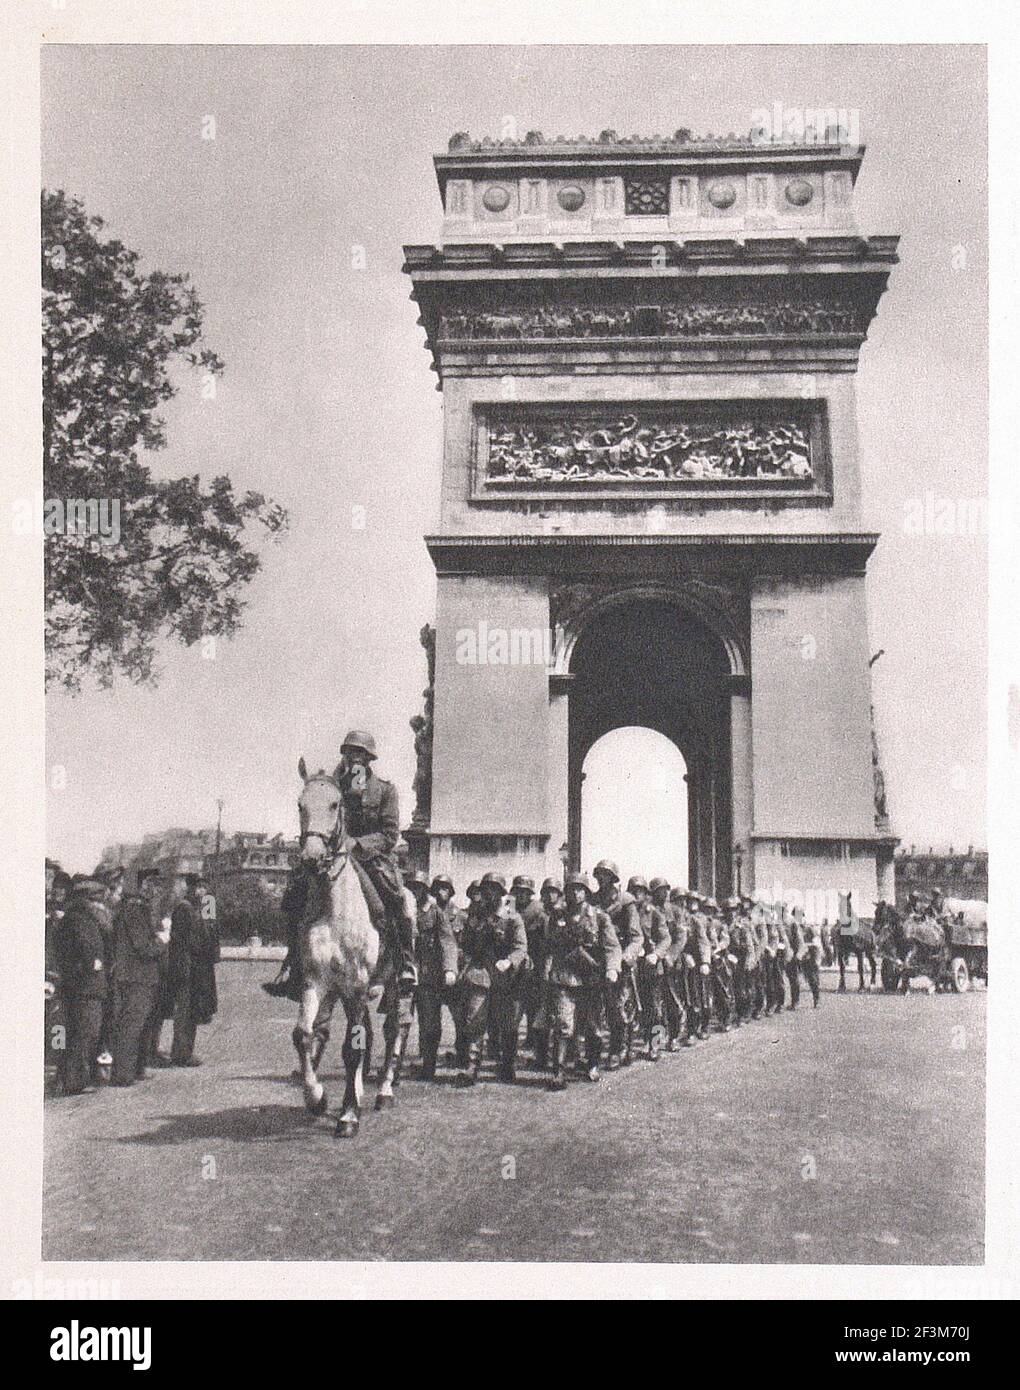 Periodo della seconda guerra mondiale dalle notizie della propaganda tedesca. Soldati Wehrmach tedeschi vicino all'Arco di Trionfo dell'Étoile. Parigi, Francia. 1940 Foto Stock